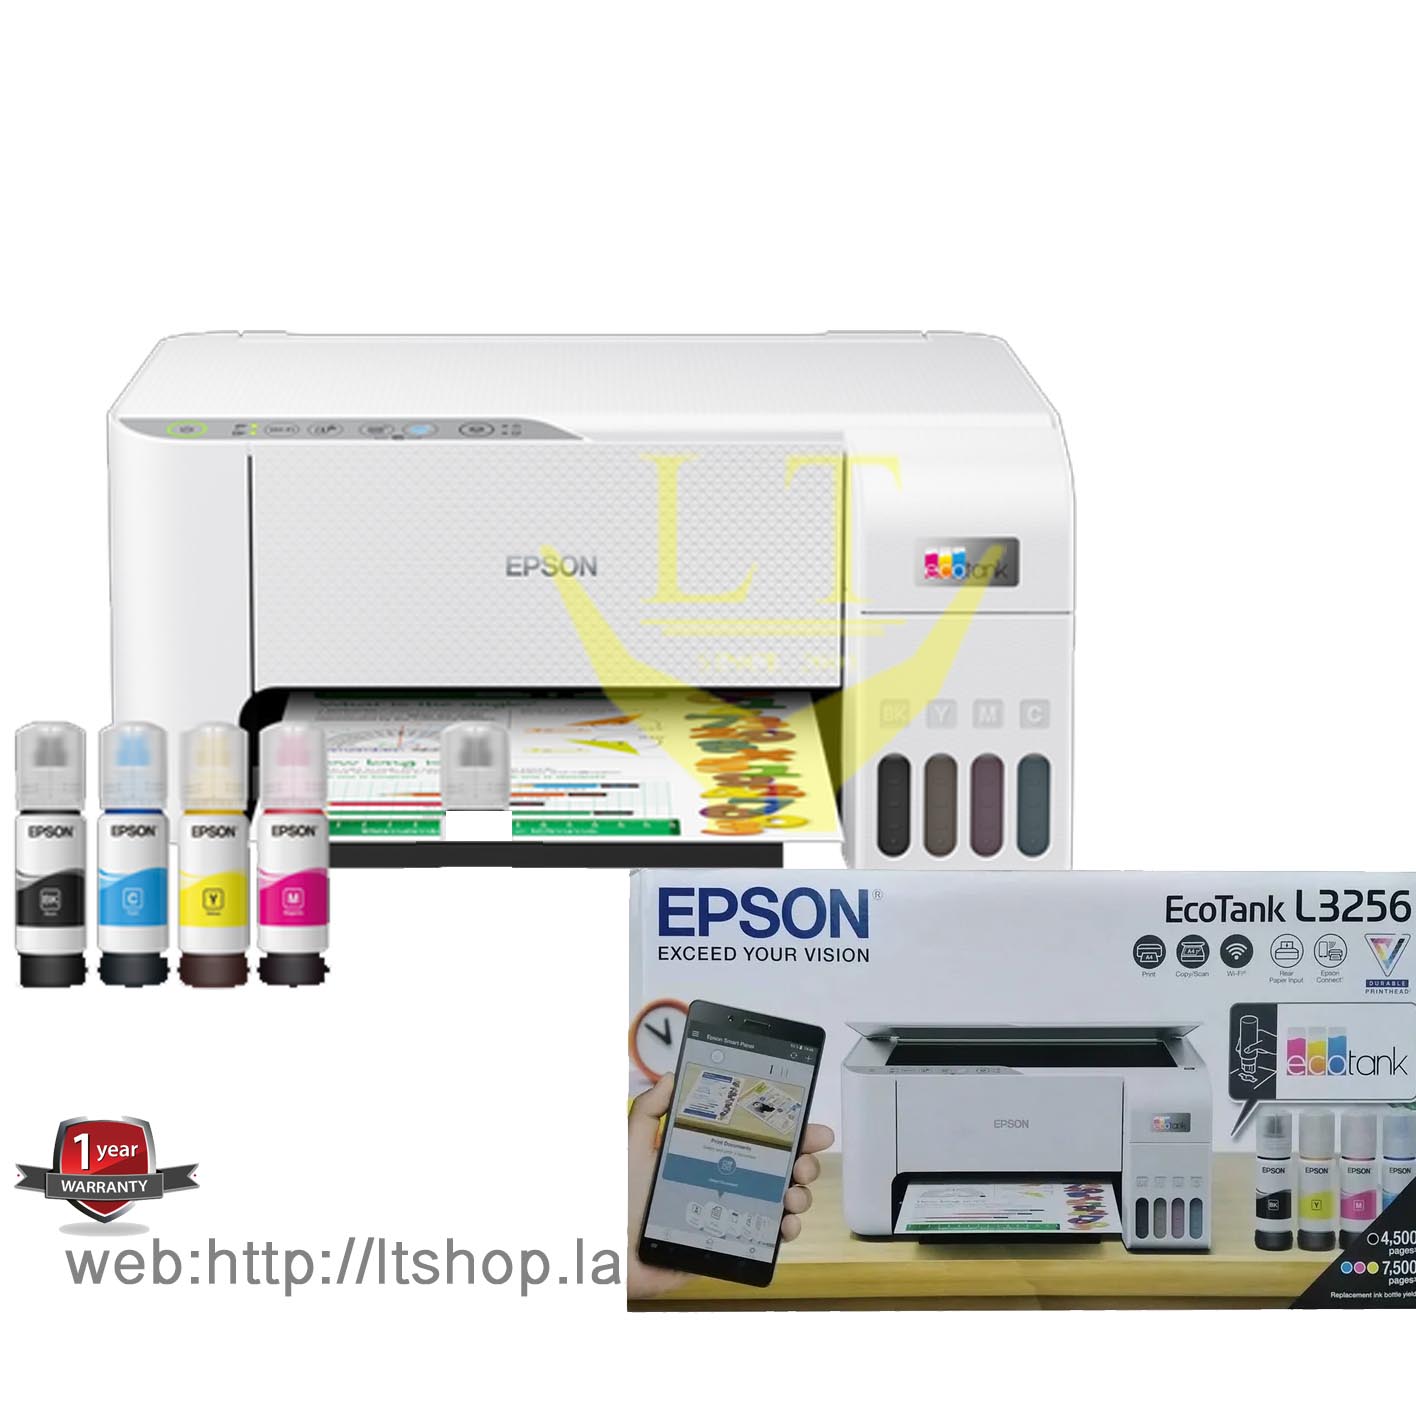 EPSON L3256 + Ink Tank (Print-scan-copy